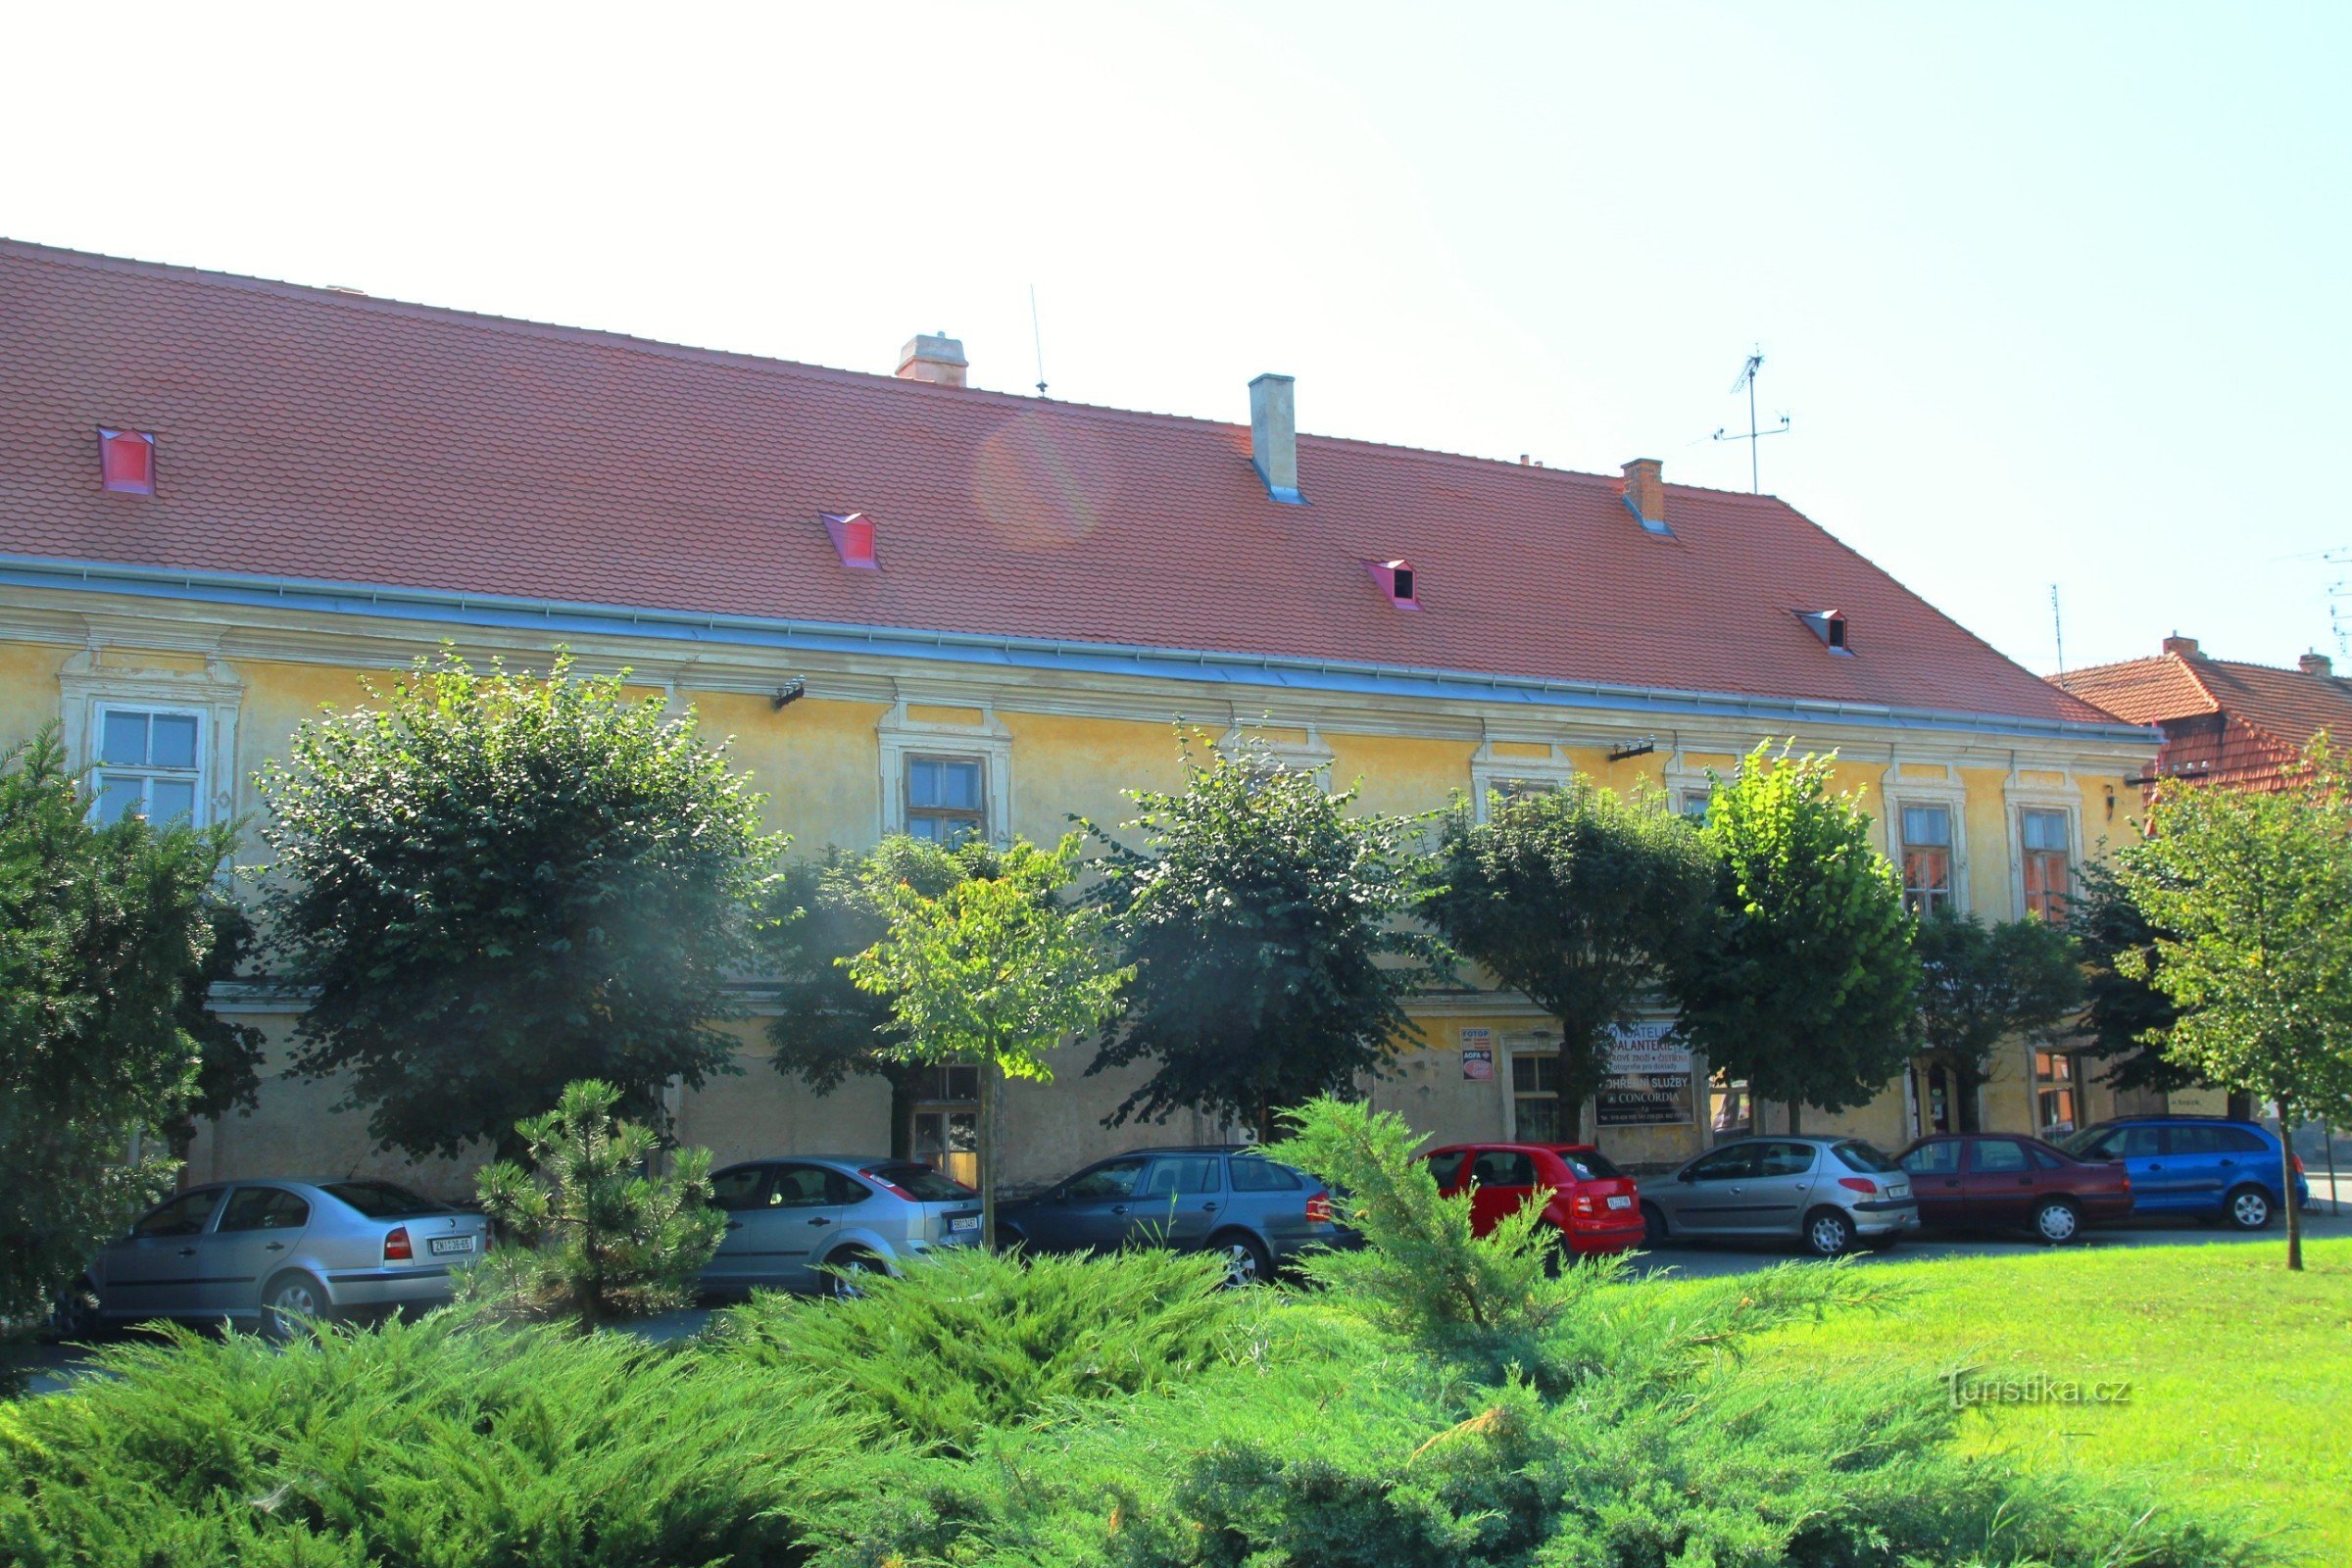 Pohořelice - egykori Pfann szálloda, kilátás a Svoboda térről